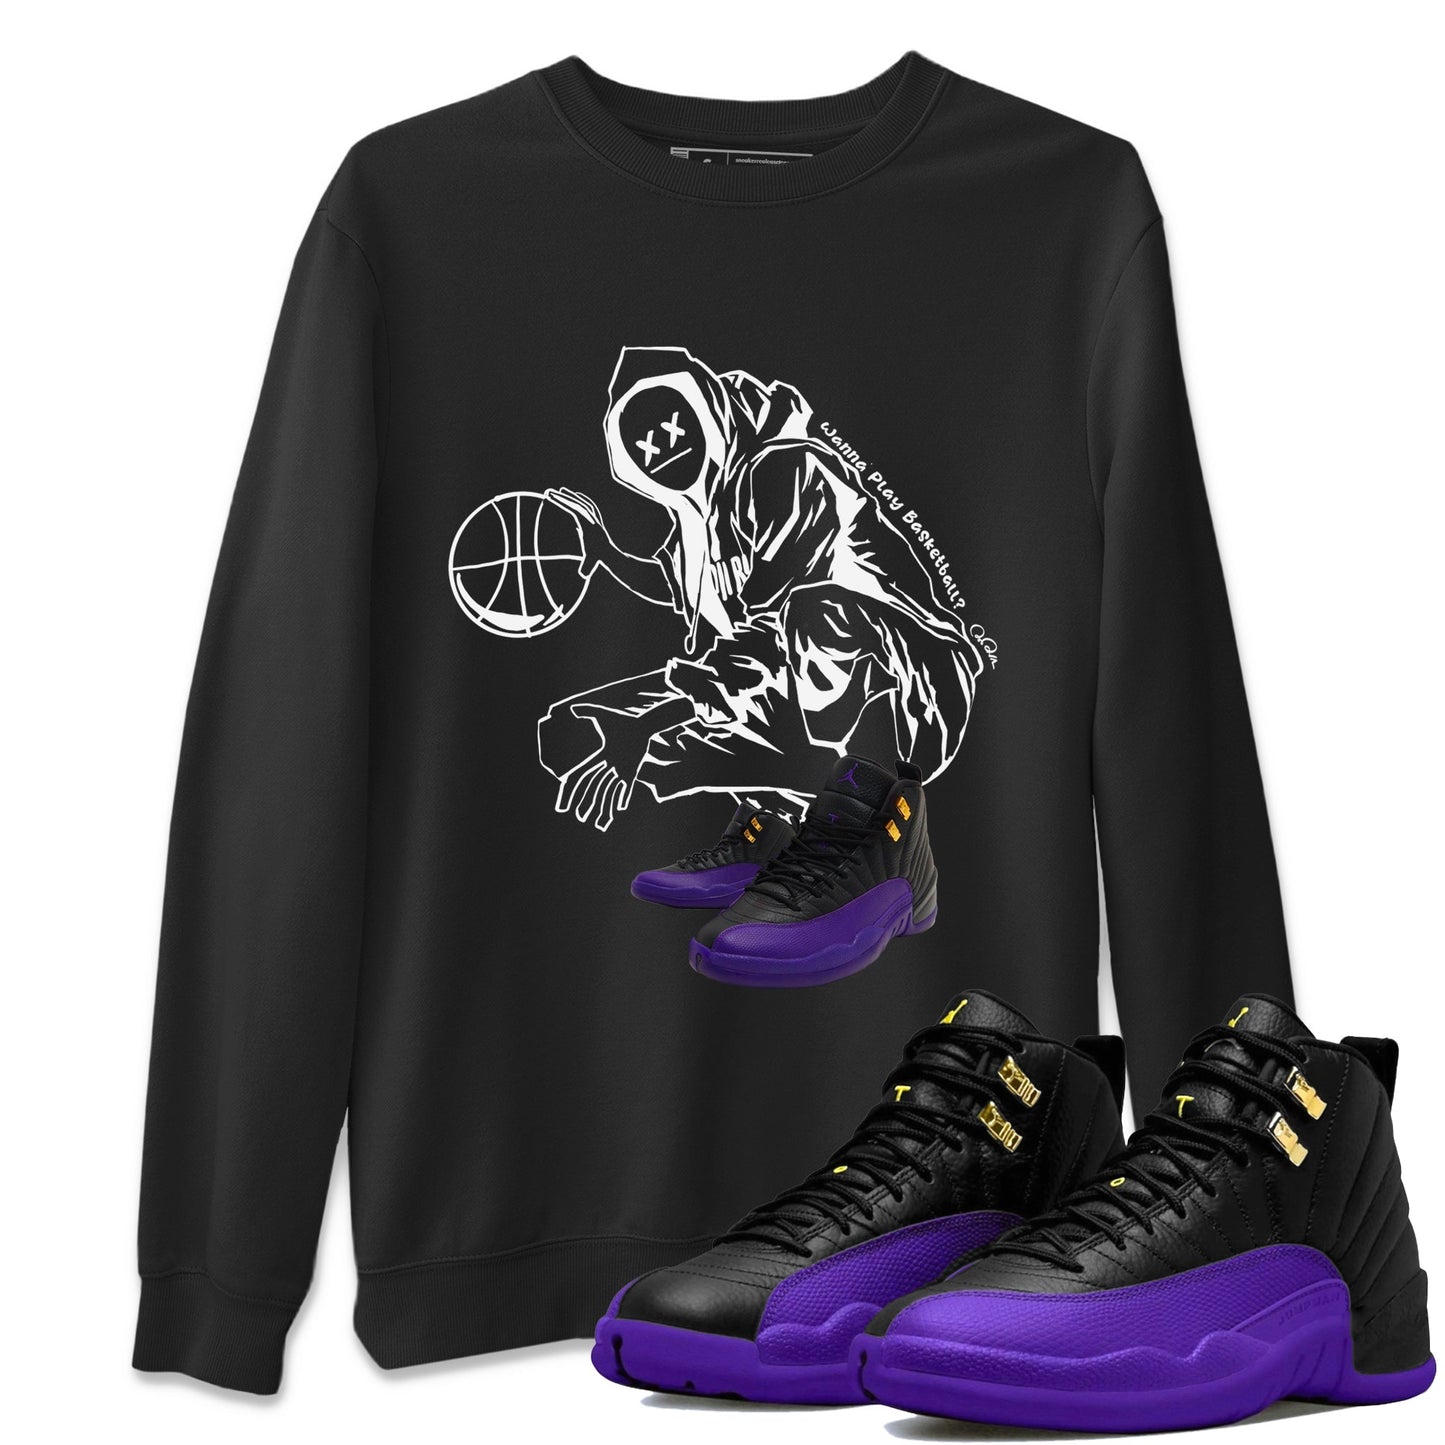 Air Jordan 12 Field Purple shirt to match jordans Wanna Play Basketball Streetwear Sneaker Shirt AJ12 Field Purple Drip Gear Zone Sneaker Matching Clothing Unisex Black 1 T-Shirt